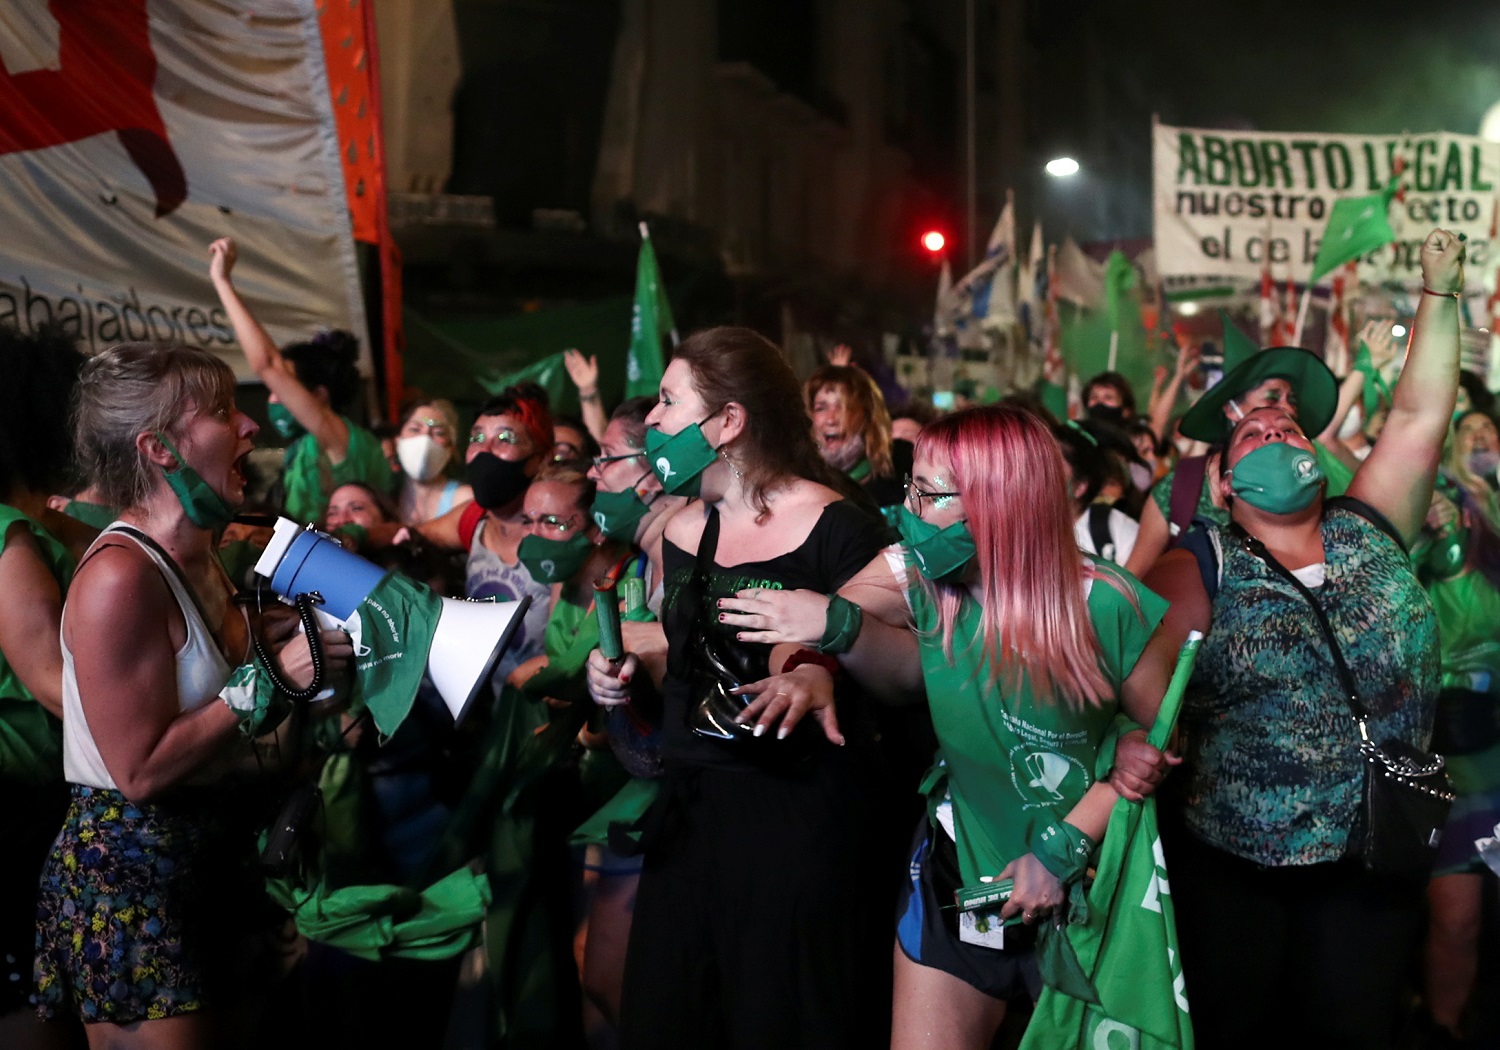 El aborto voluntario avanza en Argentina pese a los obstáculos judiciales